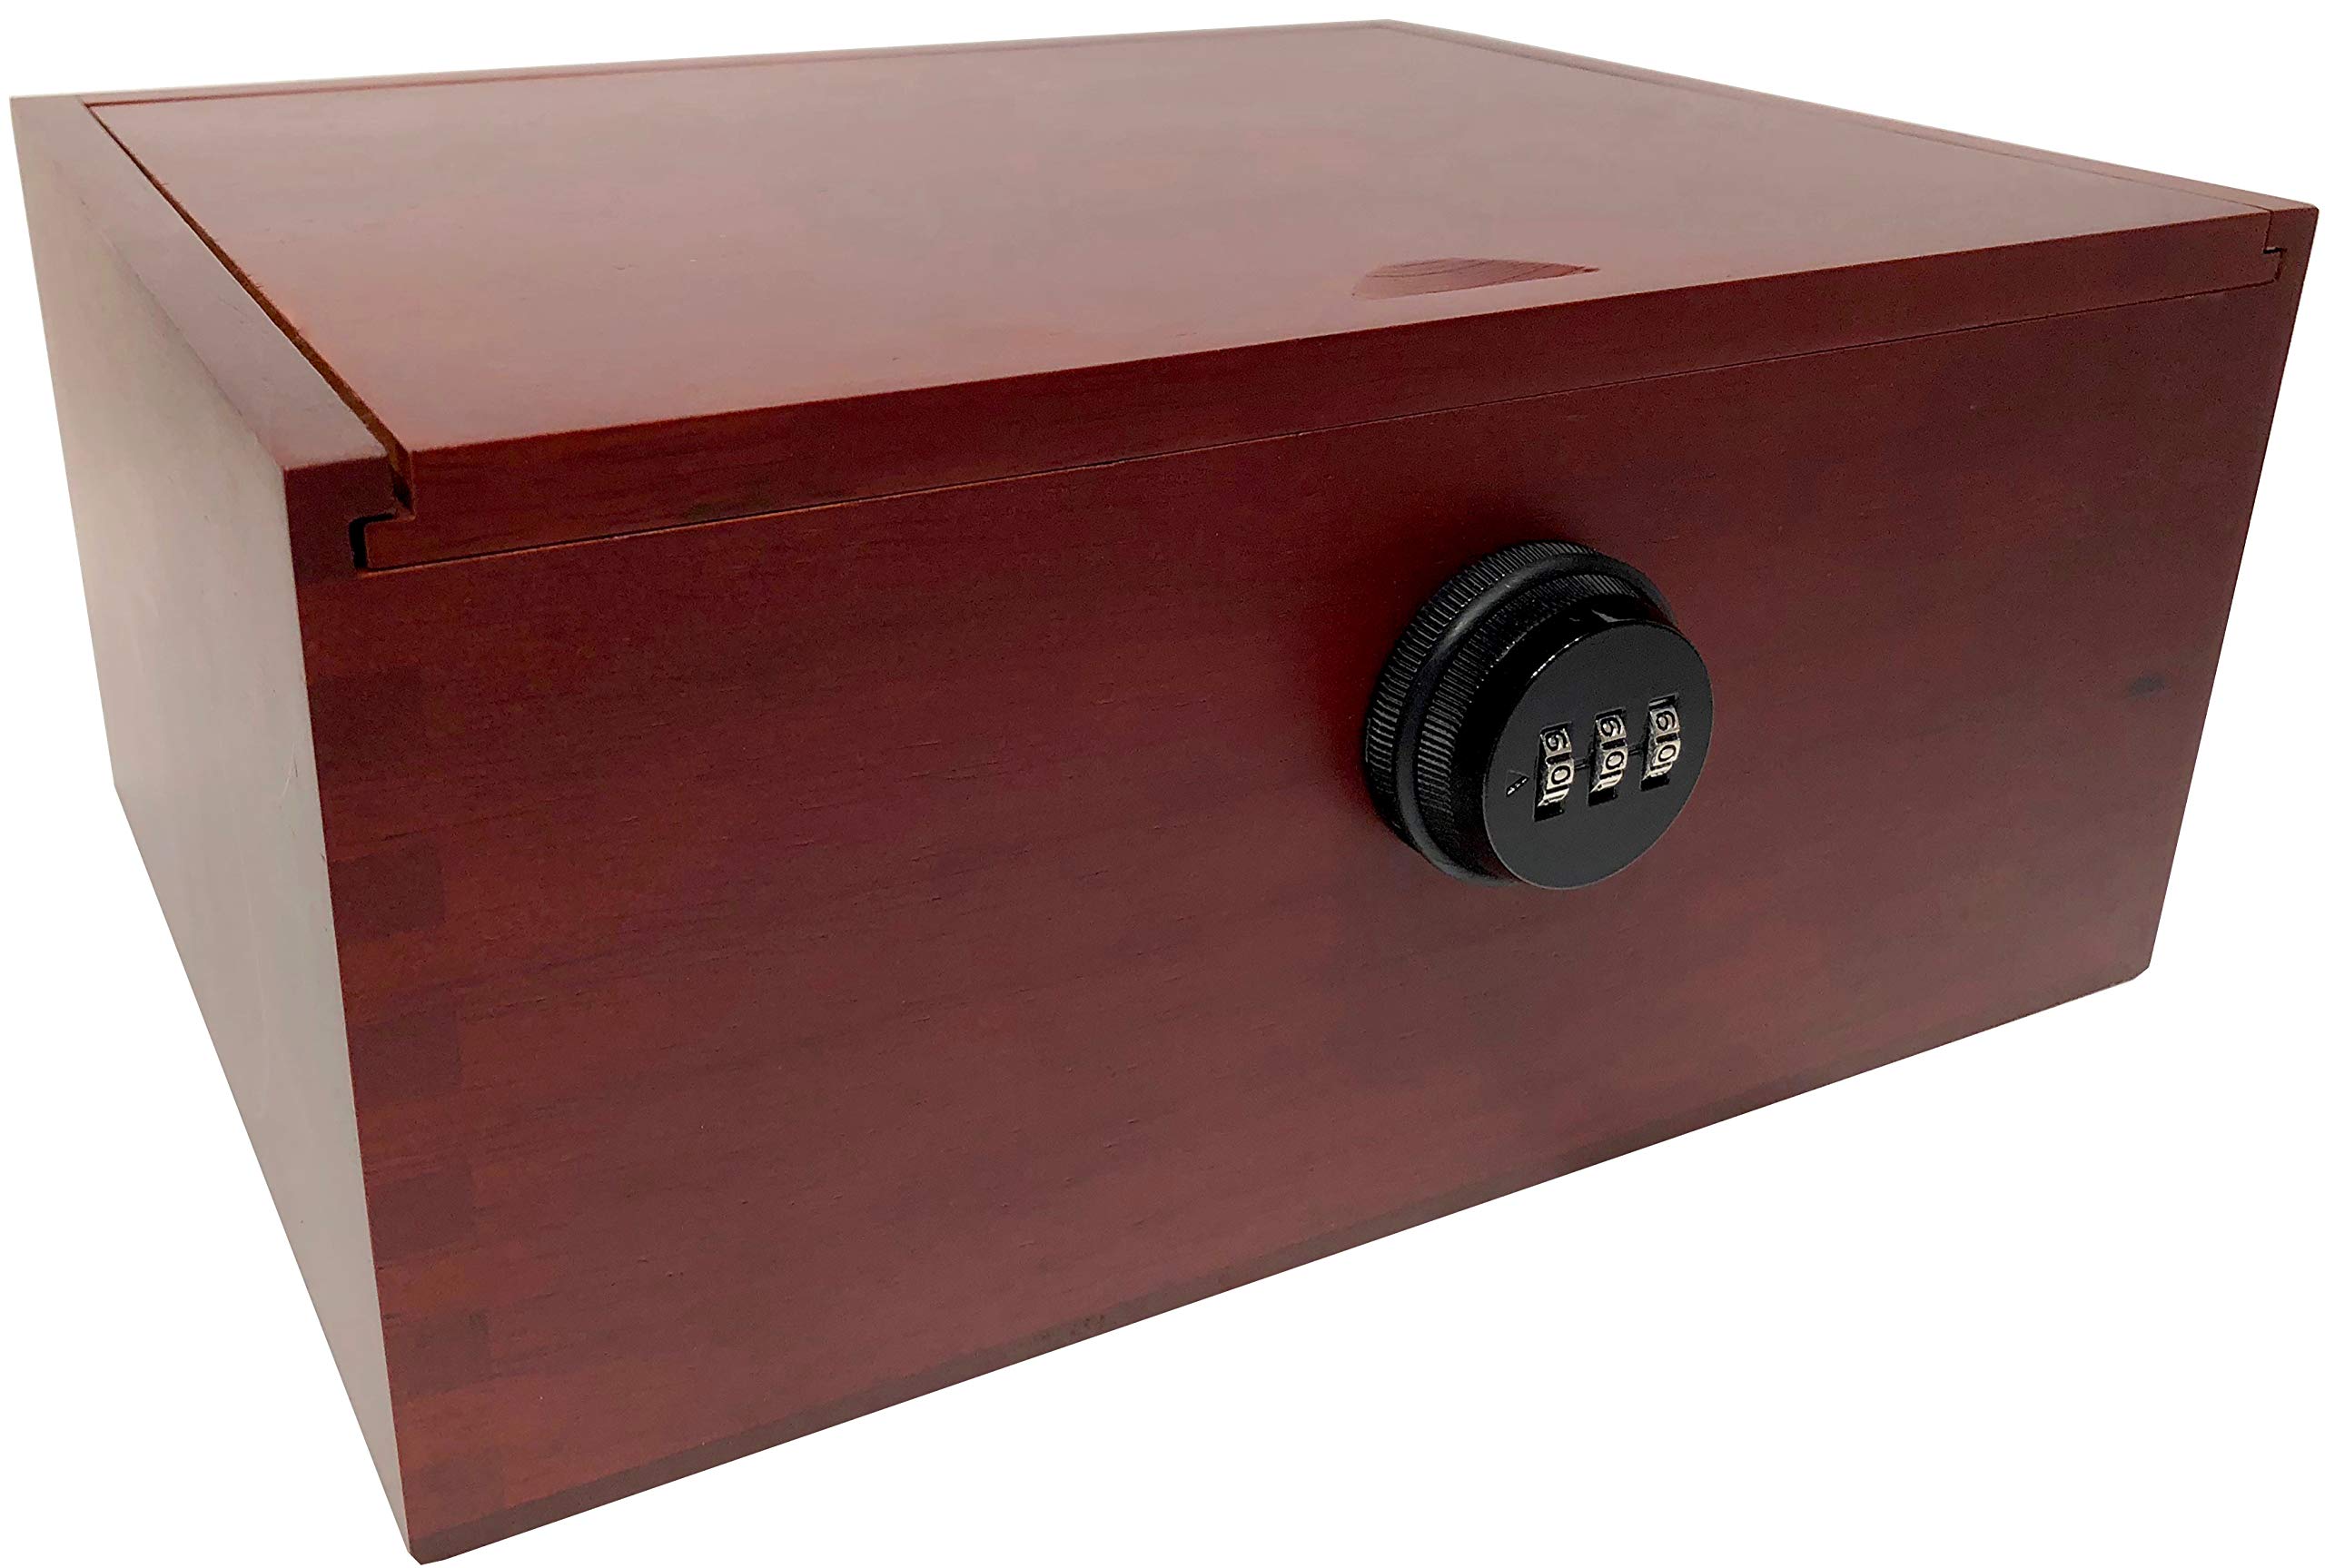 Large Wood Storage Box with Sliding Lid - Antique Box - Large Storage Box with lid and Lock - Wooden Keepsake Box with Lock (Box with Extra Tray)